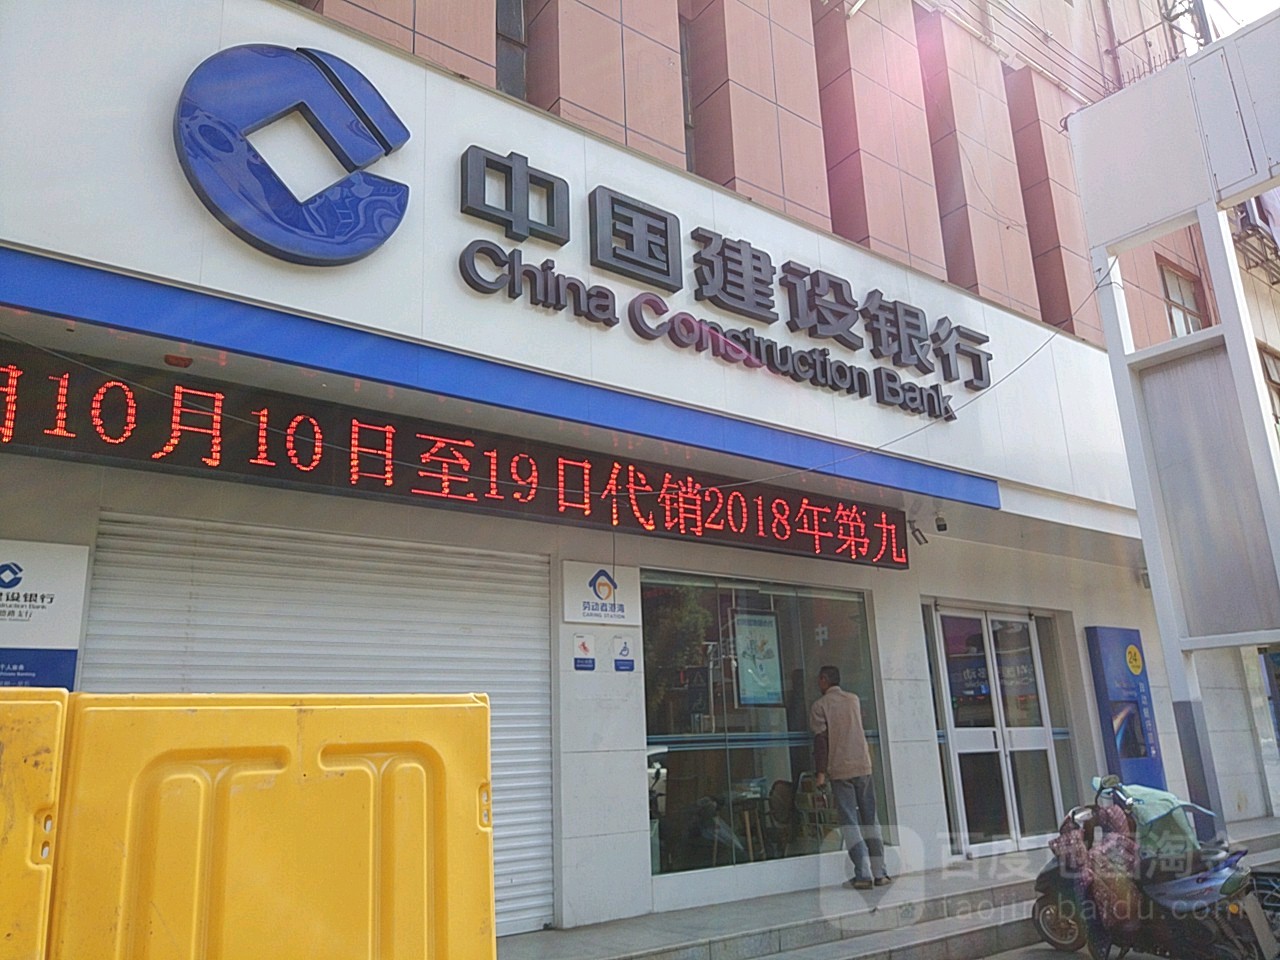 中國建設銀行24小時自助銀行服務(南京文德路支行)